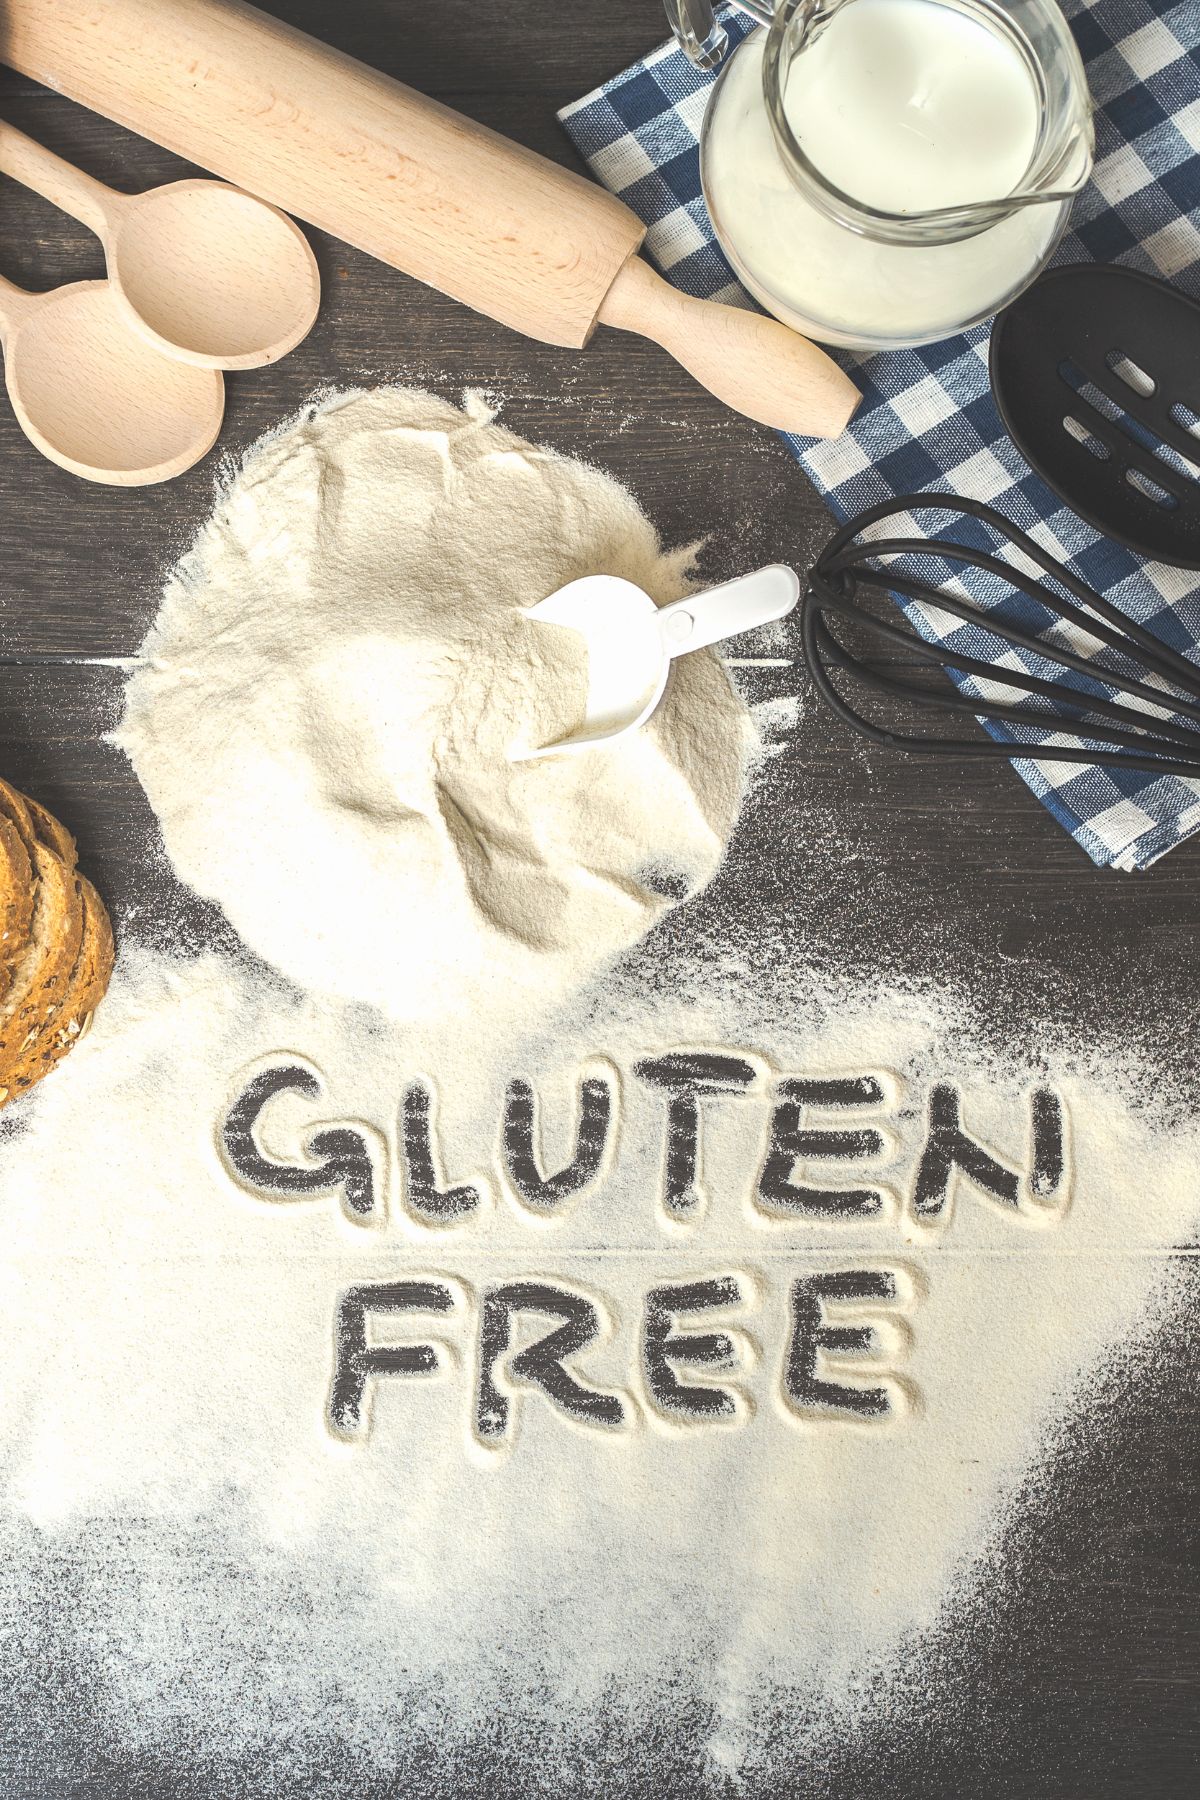 Gluten free flour and baking utensils on dark surface.